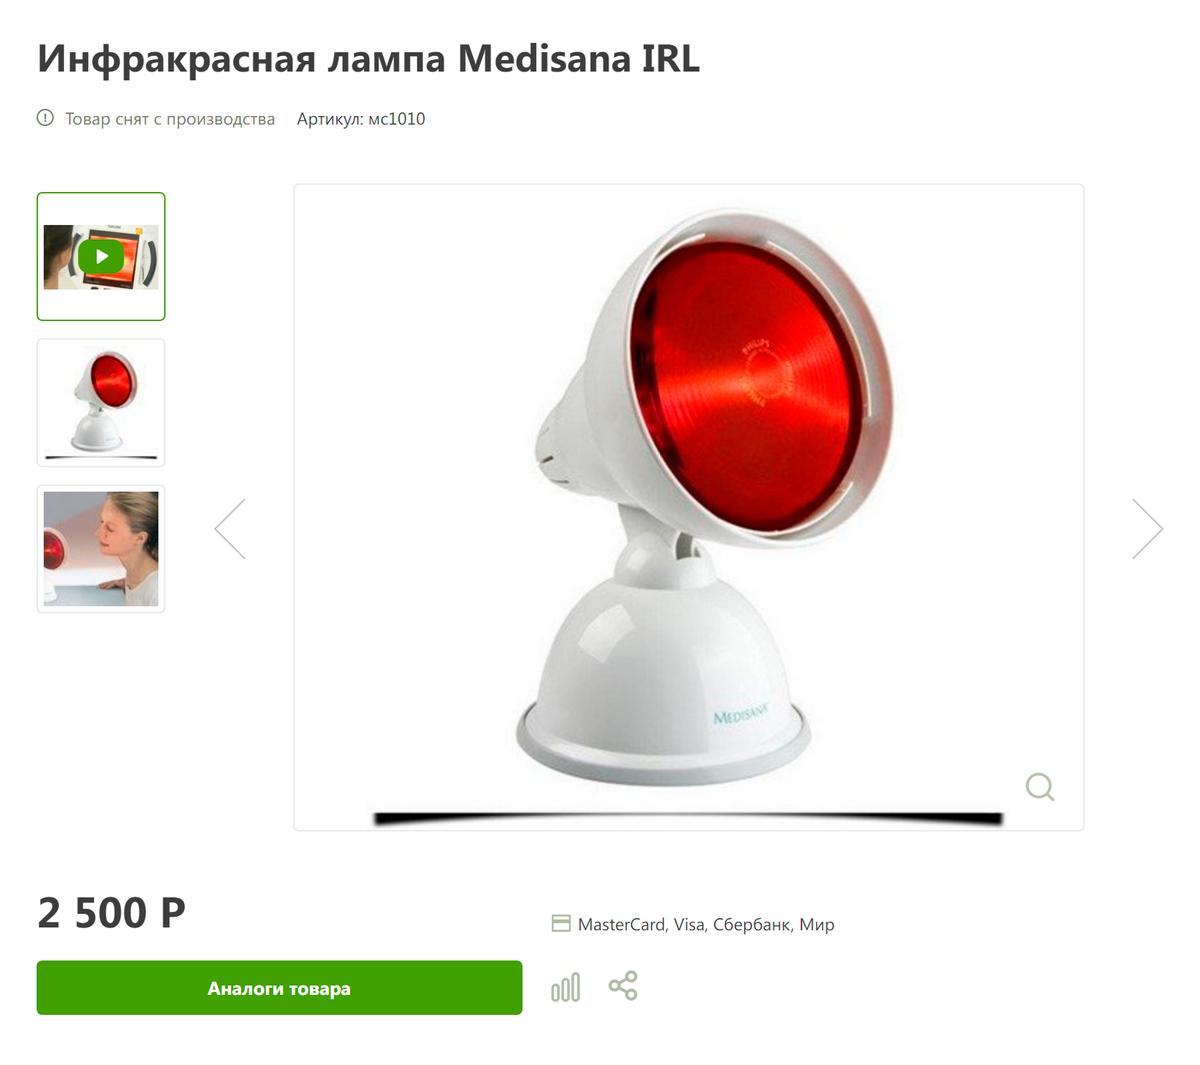 Инфракрасная лампа Medisana IRL. Источник: интернет-магазин «Сердце»